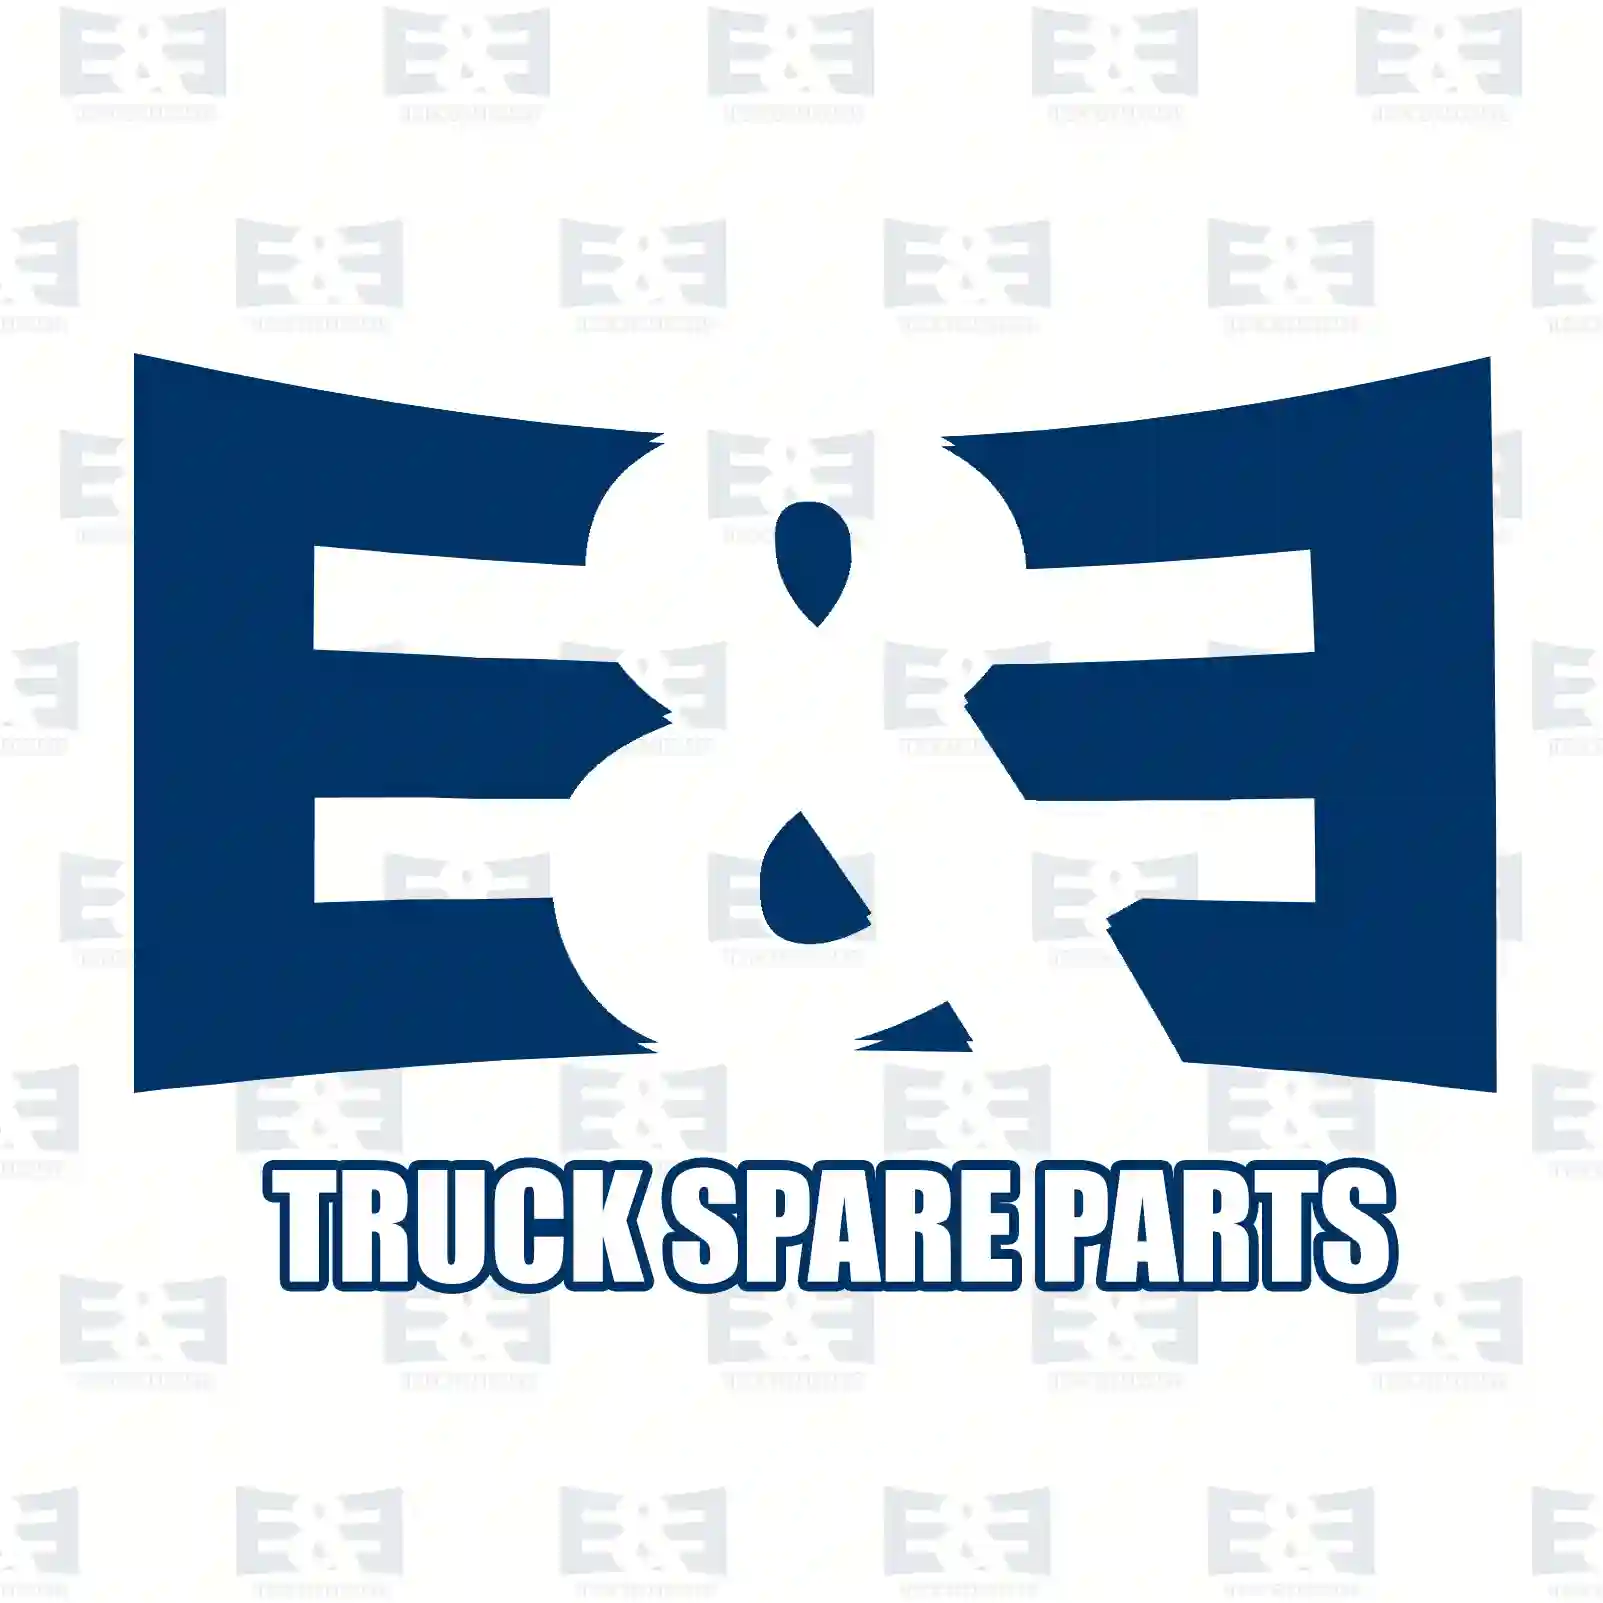 Gasket, exhaust manifold, 2E2209427, 9110641, 93161392, 93198496, 14035-AW301, 4402641, 4430356, 4435214, 7700874592, 8200867602, 30620719, 30750740, 30889404, 31272330 ||  2E2209427 E&E Truck Spare Parts | Truck Spare Parts, Auotomotive Spare Parts Gasket, exhaust manifold, 2E2209427, 9110641, 93161392, 93198496, 14035-AW301, 4402641, 4430356, 4435214, 7700874592, 8200867602, 30620719, 30750740, 30889404, 31272330 ||  2E2209427 E&E Truck Spare Parts | Truck Spare Parts, Auotomotive Spare Parts